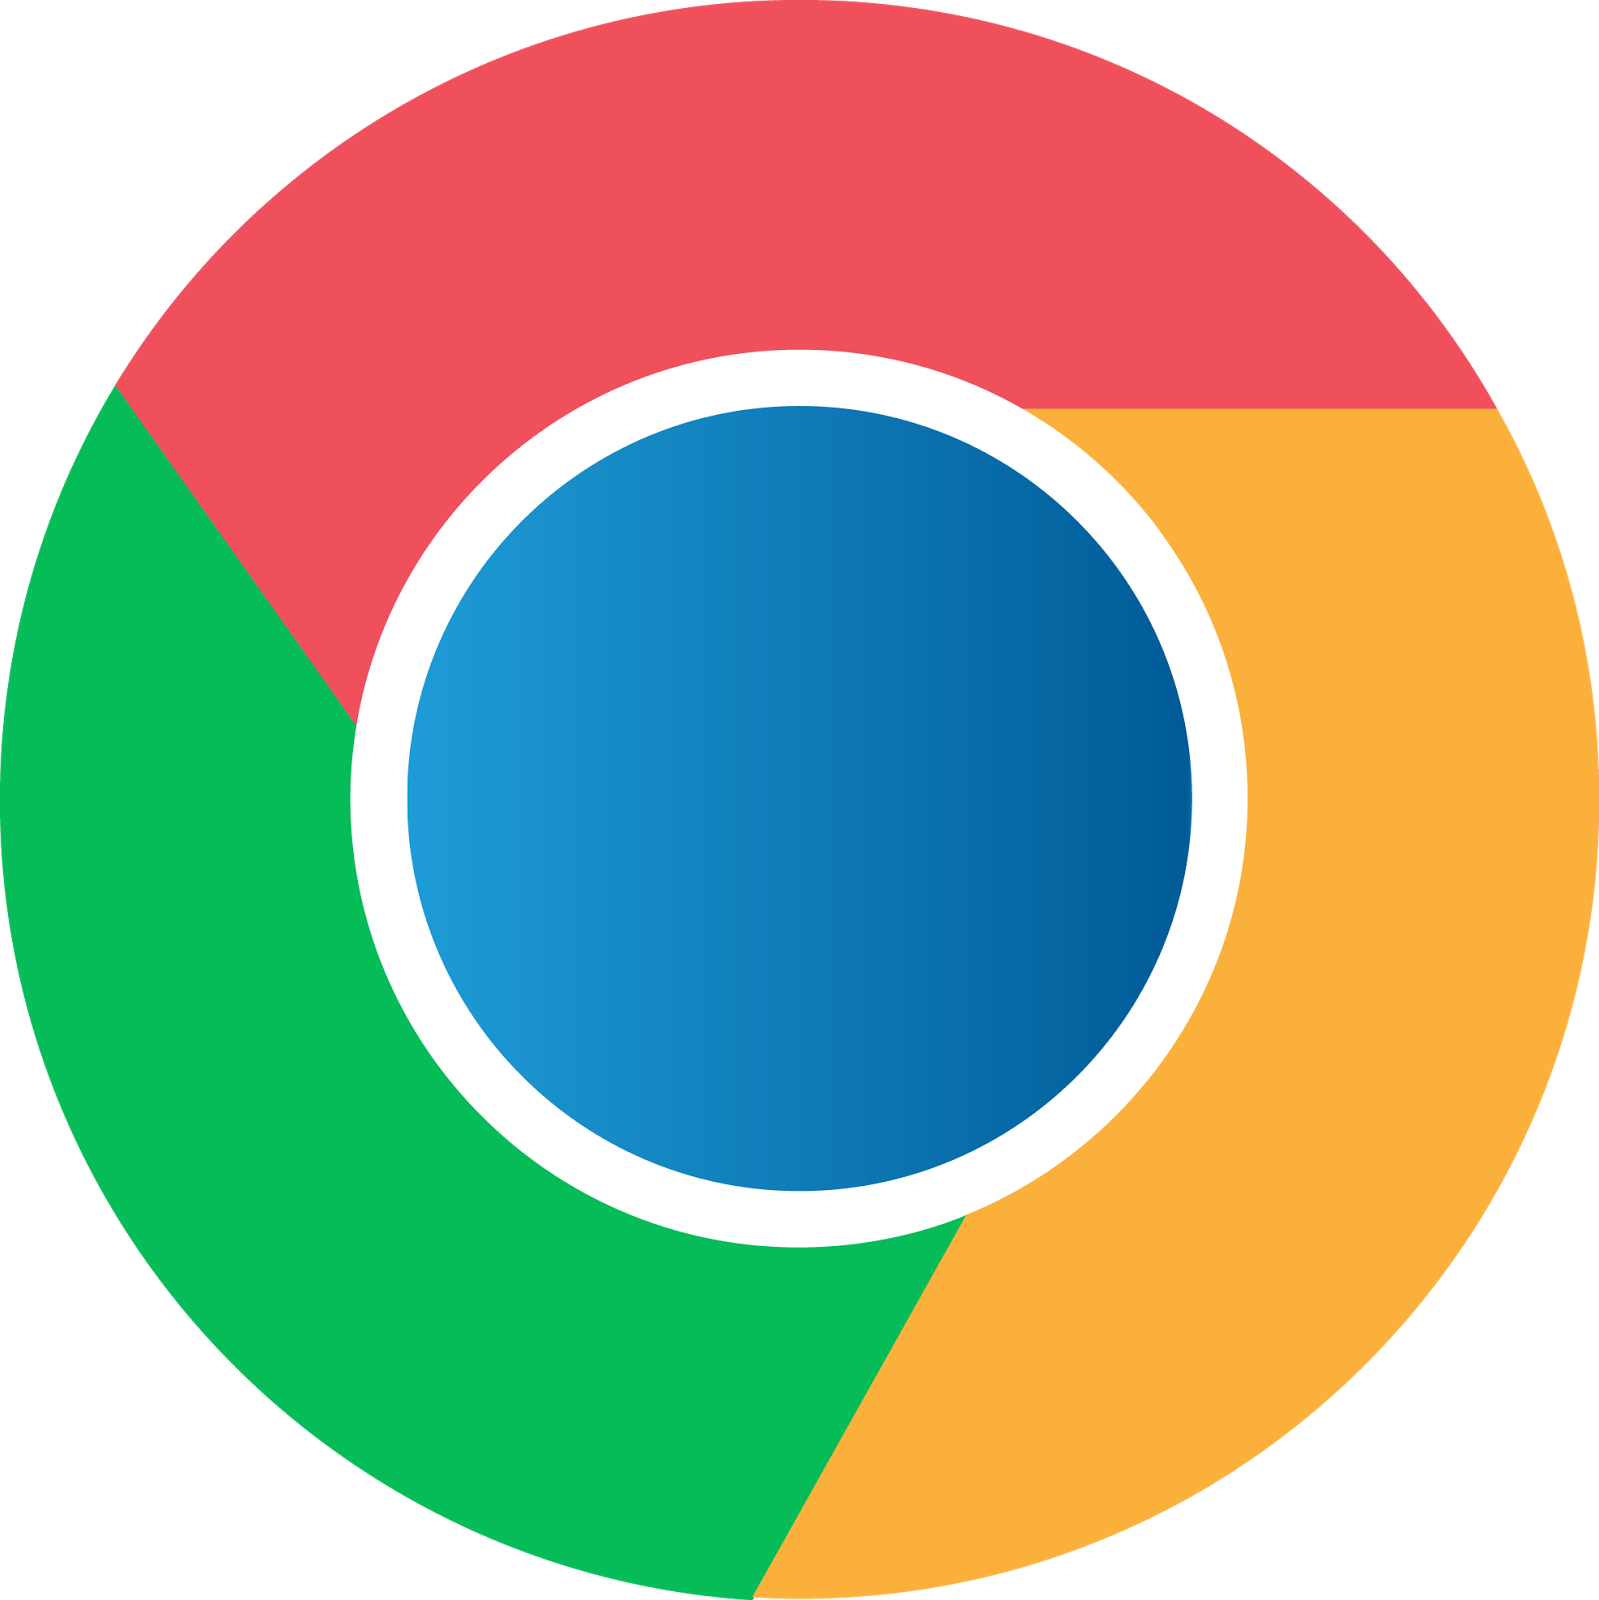 google chrome logo design